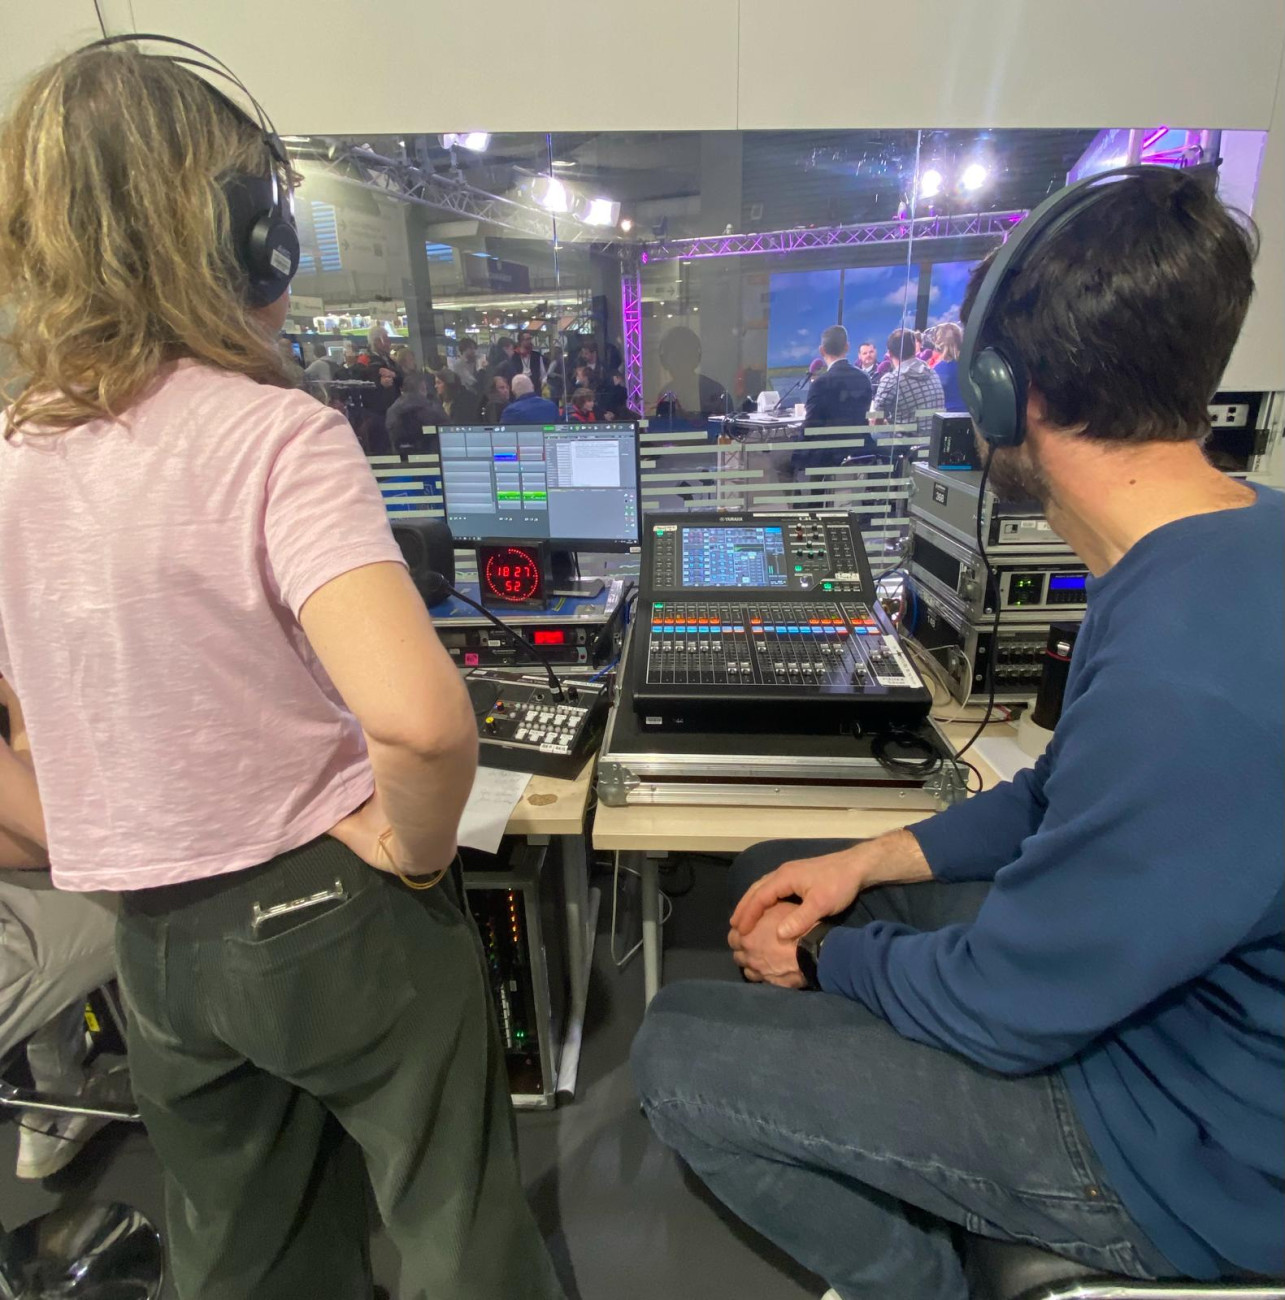 Les techniciens dans la régie du studio Radio France au salon de l'agriculture